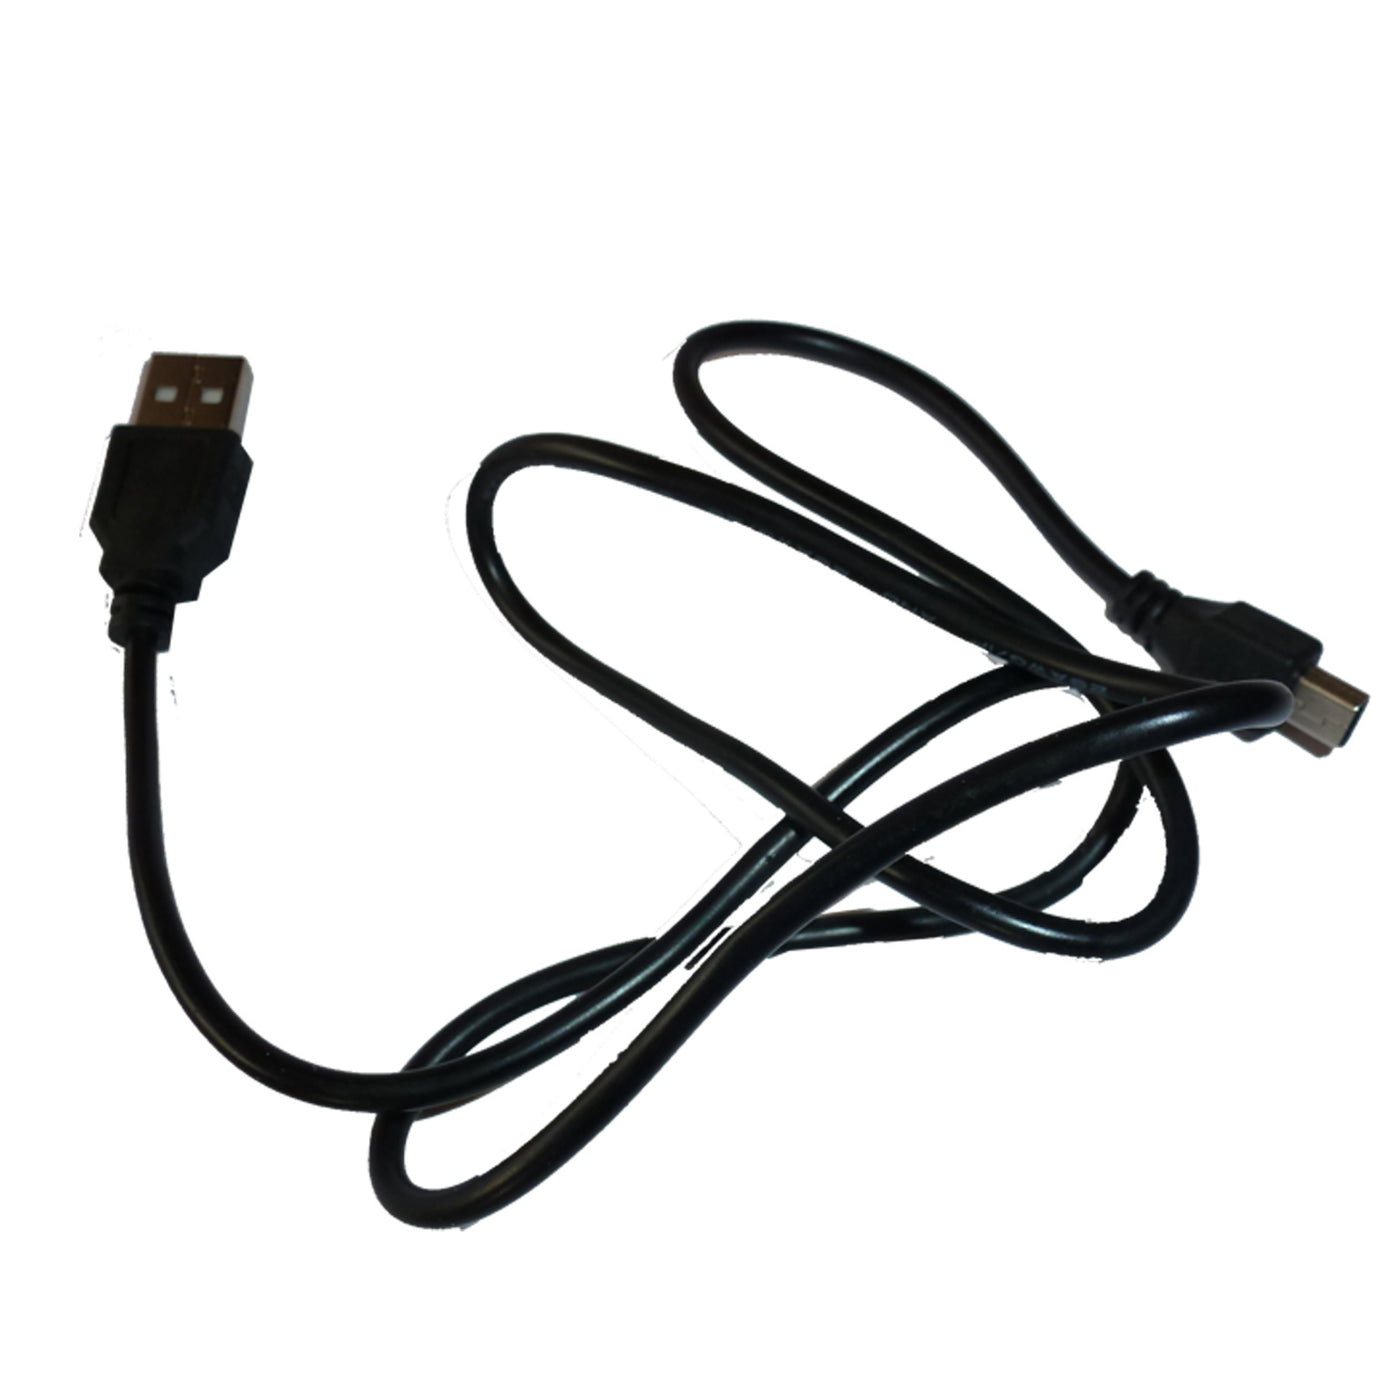 Cable USB pour System lumineux diabolo PASSEPASSE ou iG-LIGHT